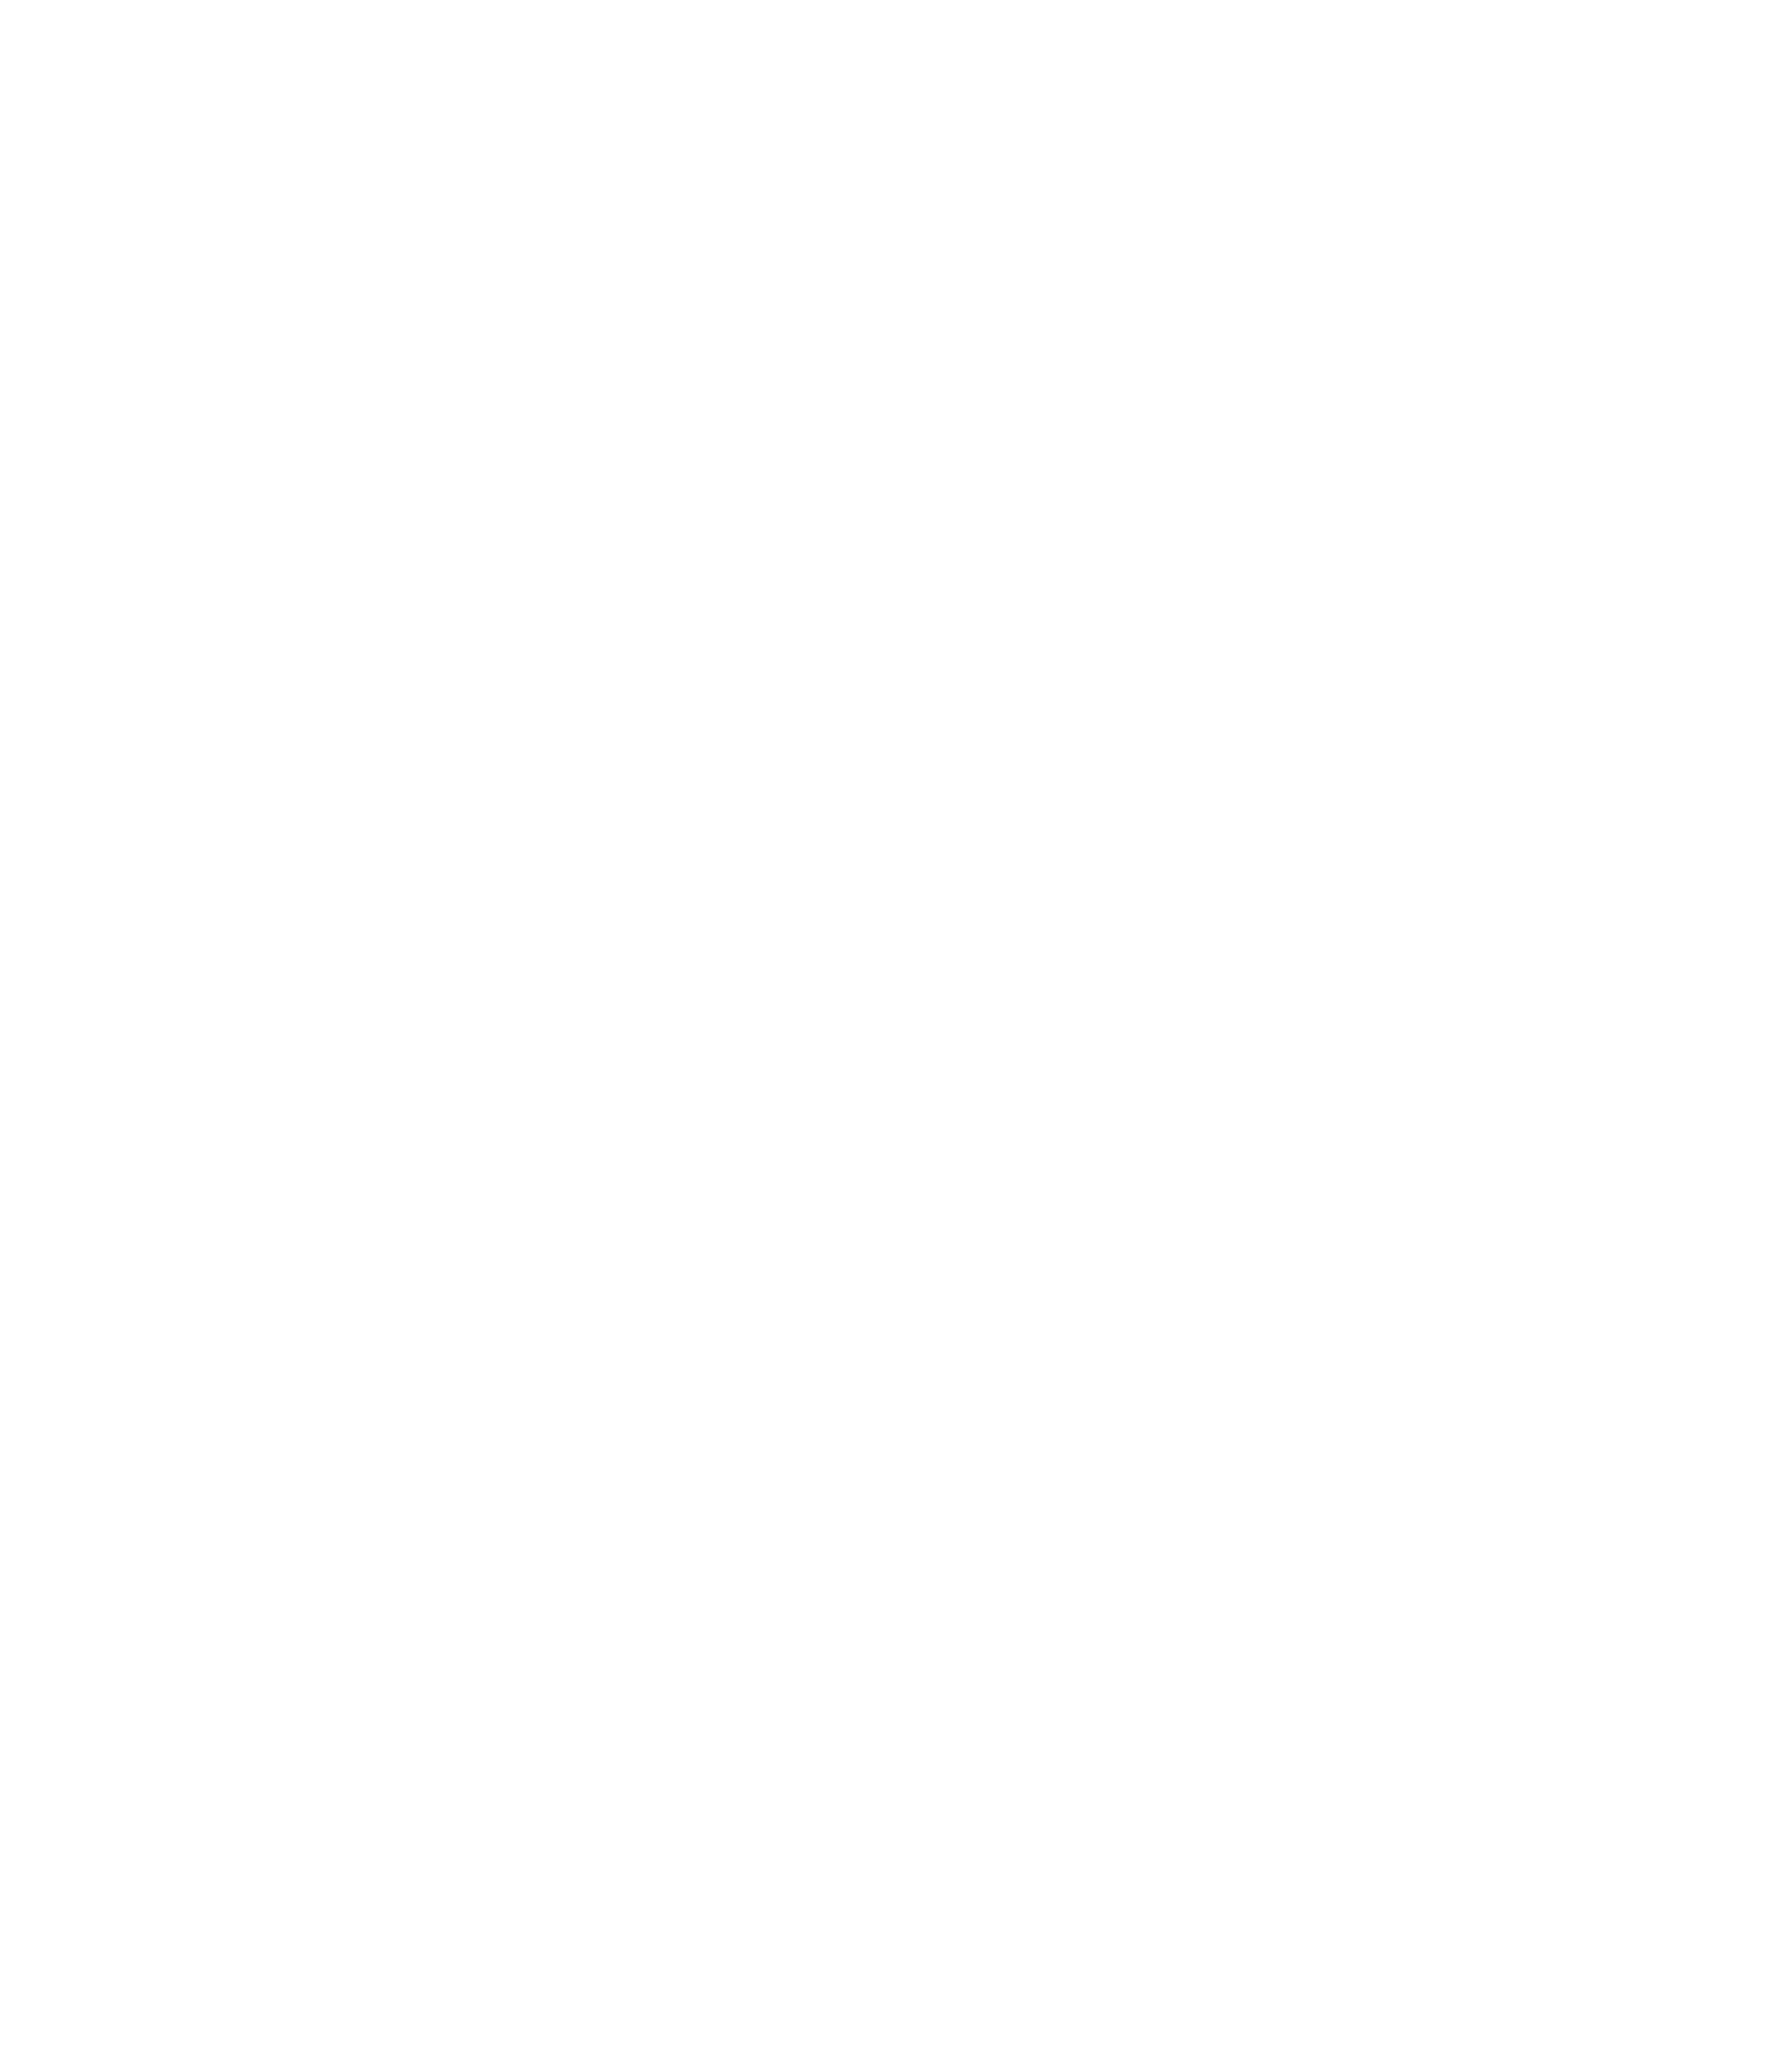 PARCO OUTDOOR PARK